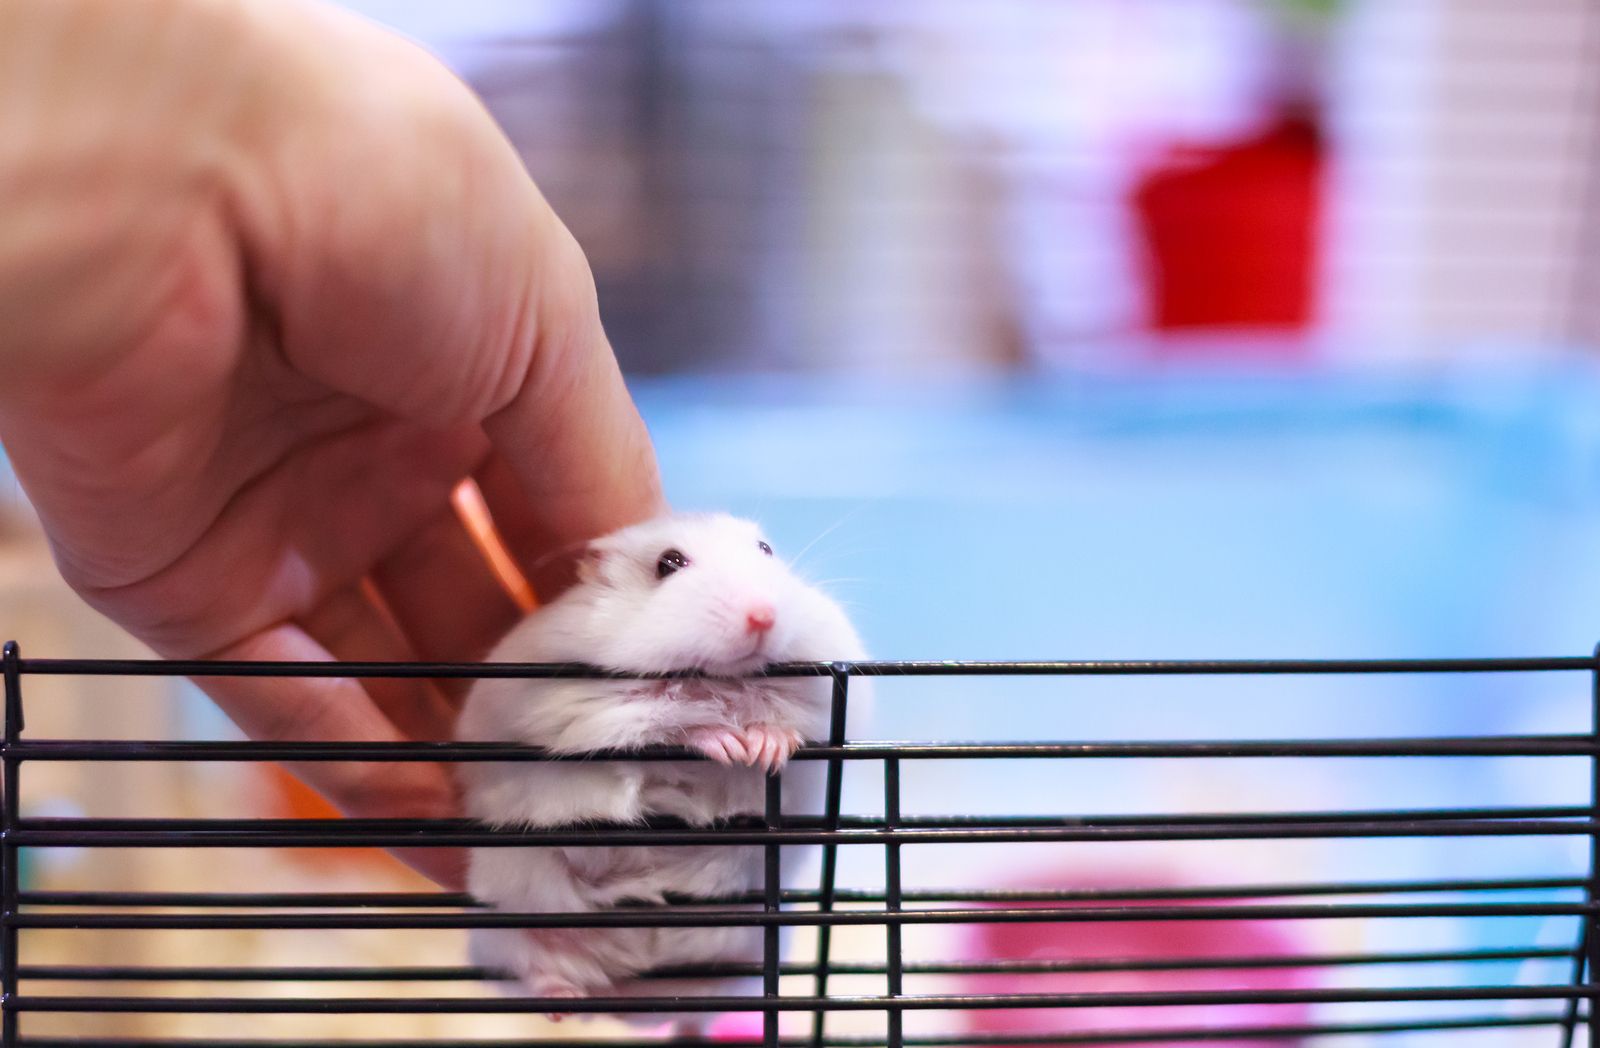 Pautas de higiene y limpieza cuando tu mascota es un pequeño roedor (bigstock)